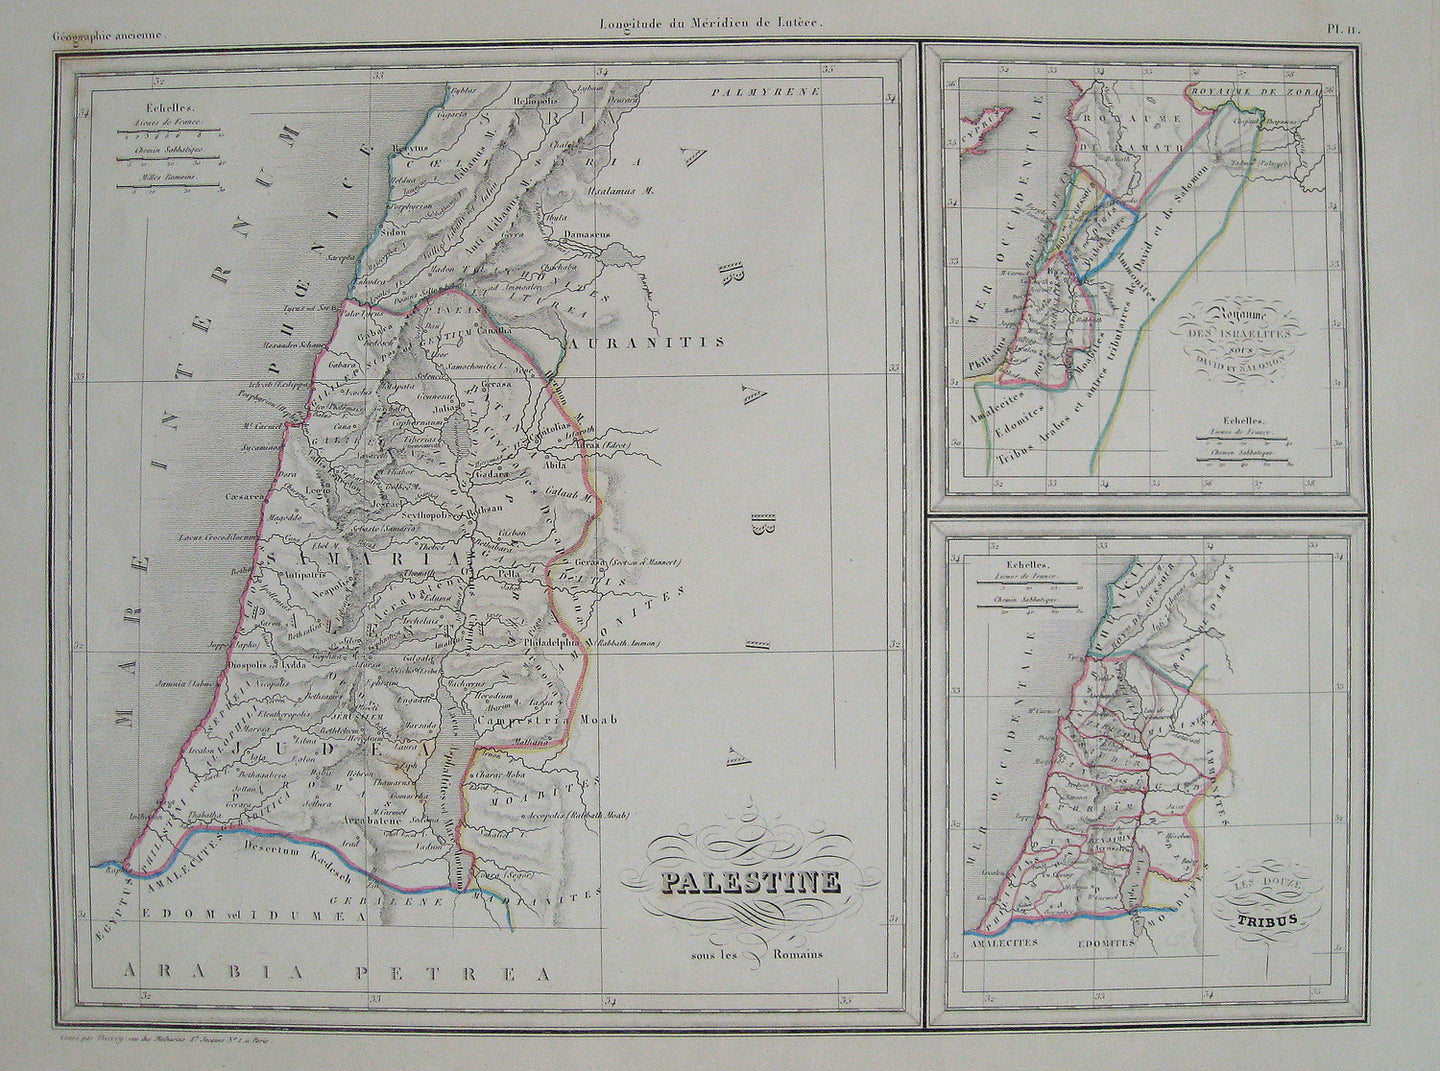 1842 - Palestine sous Romains, avec Le Royaume des Israelites sous – Maps of Antiquity